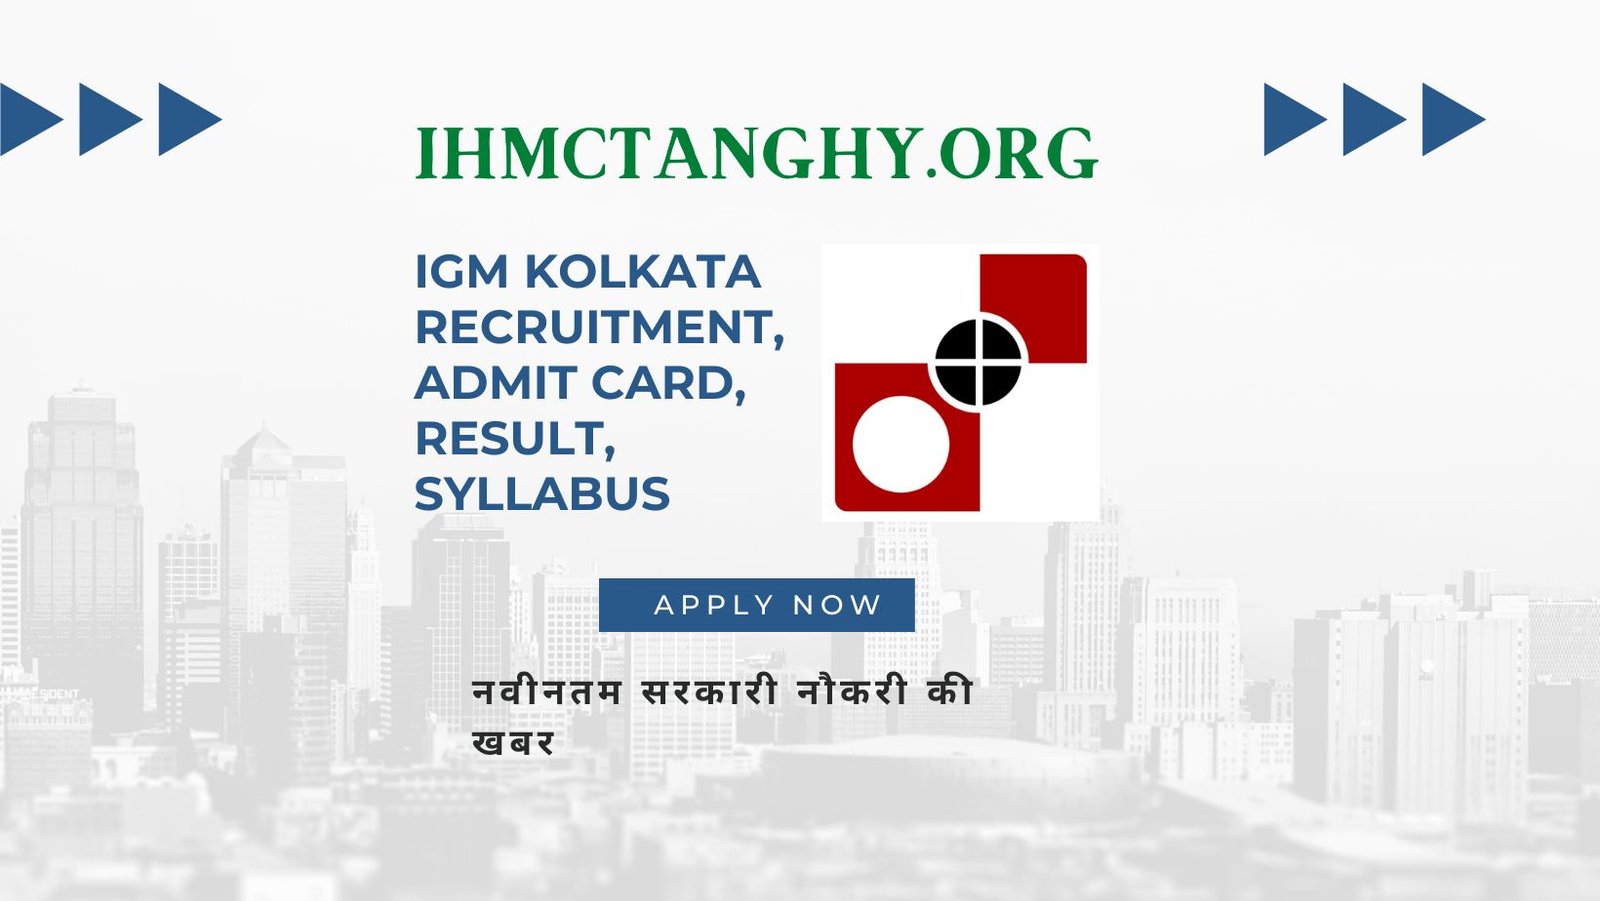 IGM Kolkata Recruitment